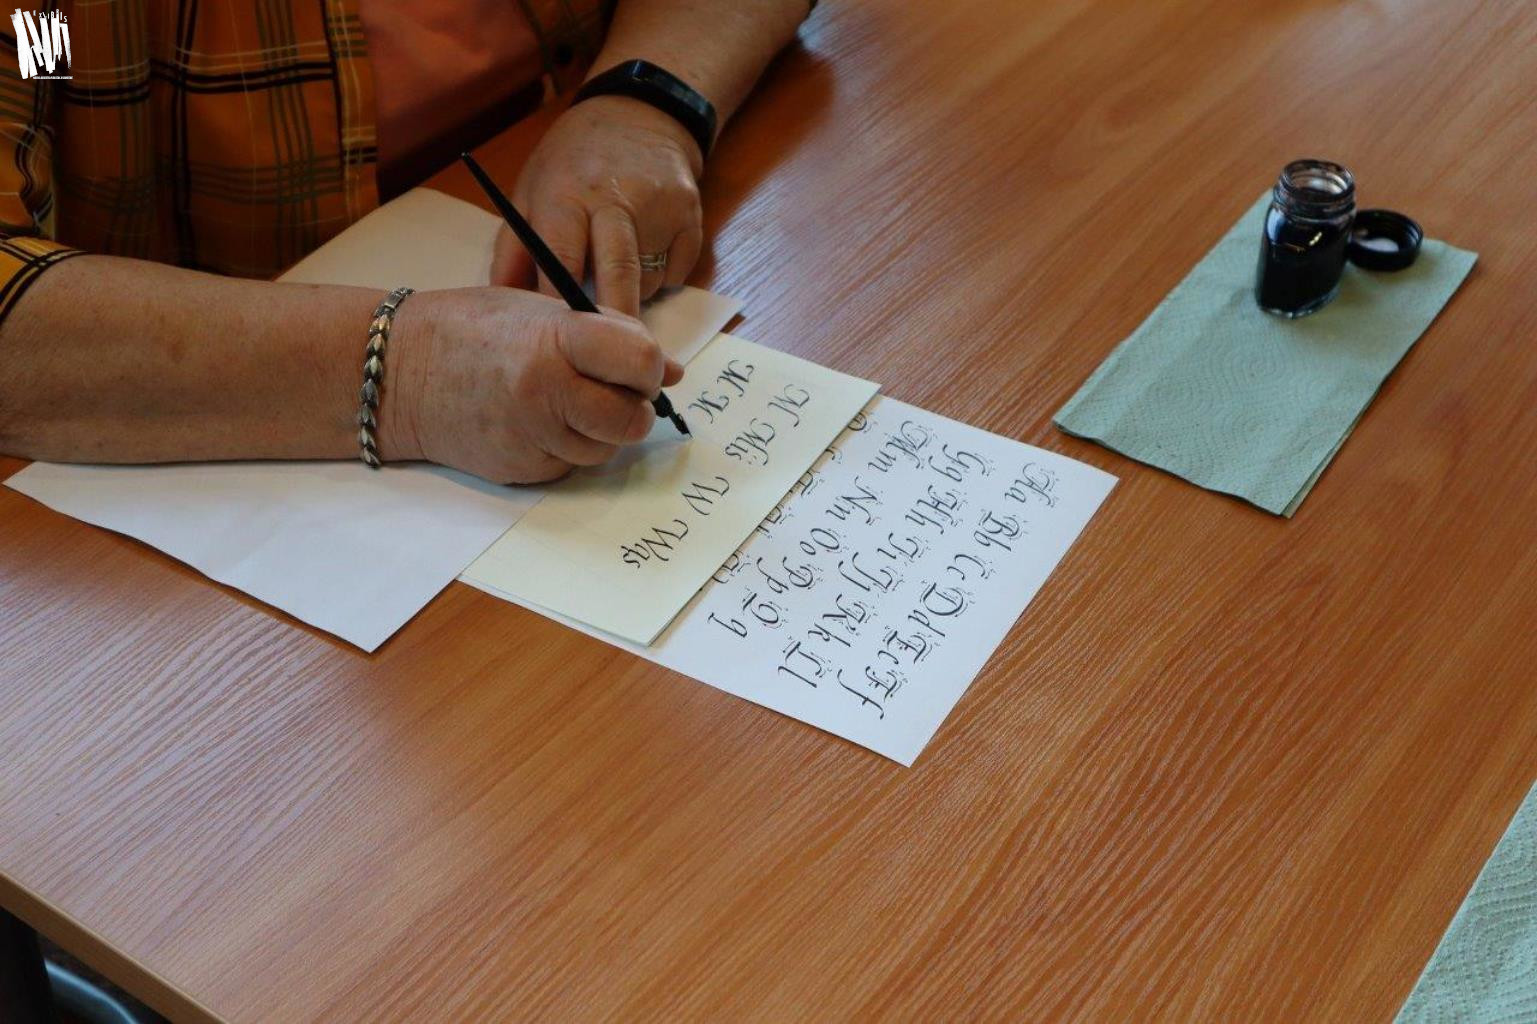 Osoba siedząca przy stole ćwiczy pisownię liter według wzornika. Zbliżenie na dłonie. W jednej z nich uczestnik warsztatów trzyma pióro. Obok na papierowej serwetce stoi otwarty kałamarz.